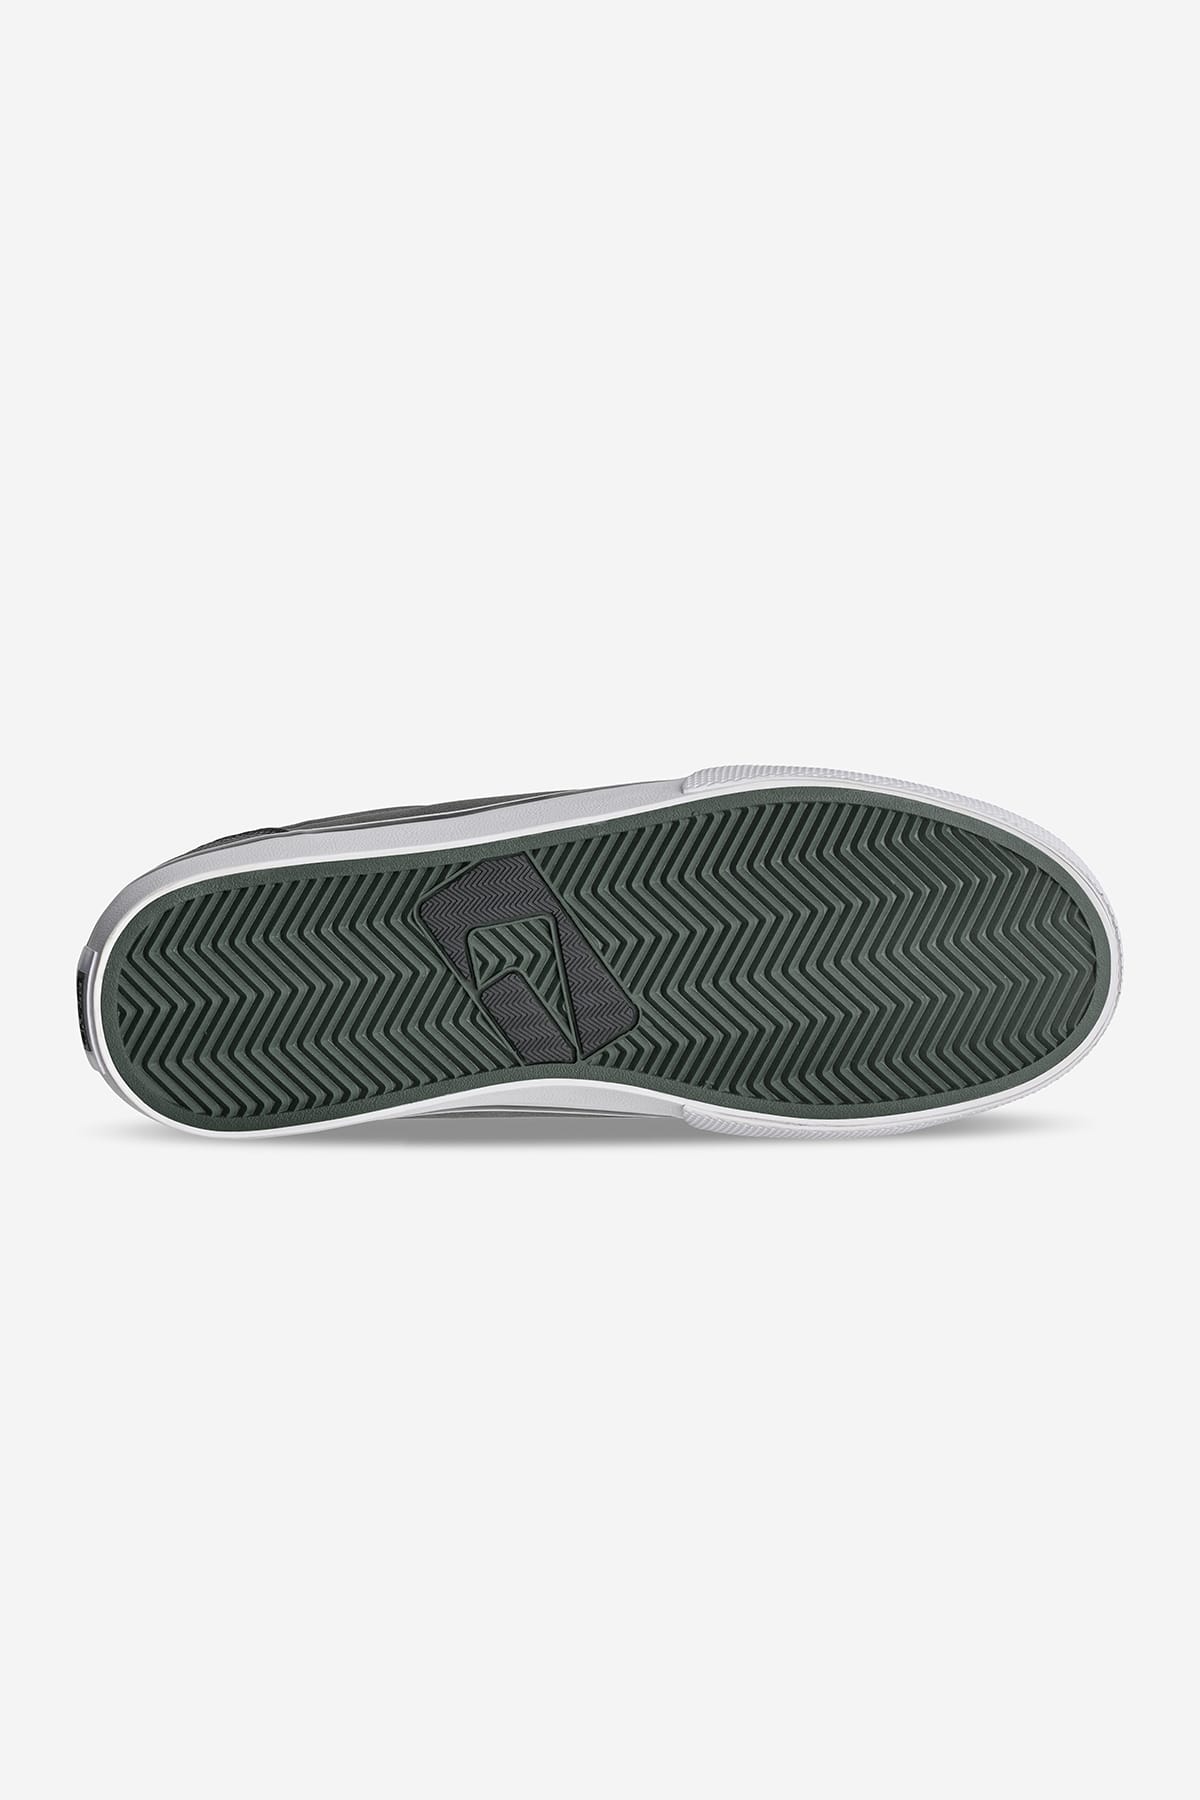 Globe - Gs - Cinzento/Distress - skateboard Sapatos